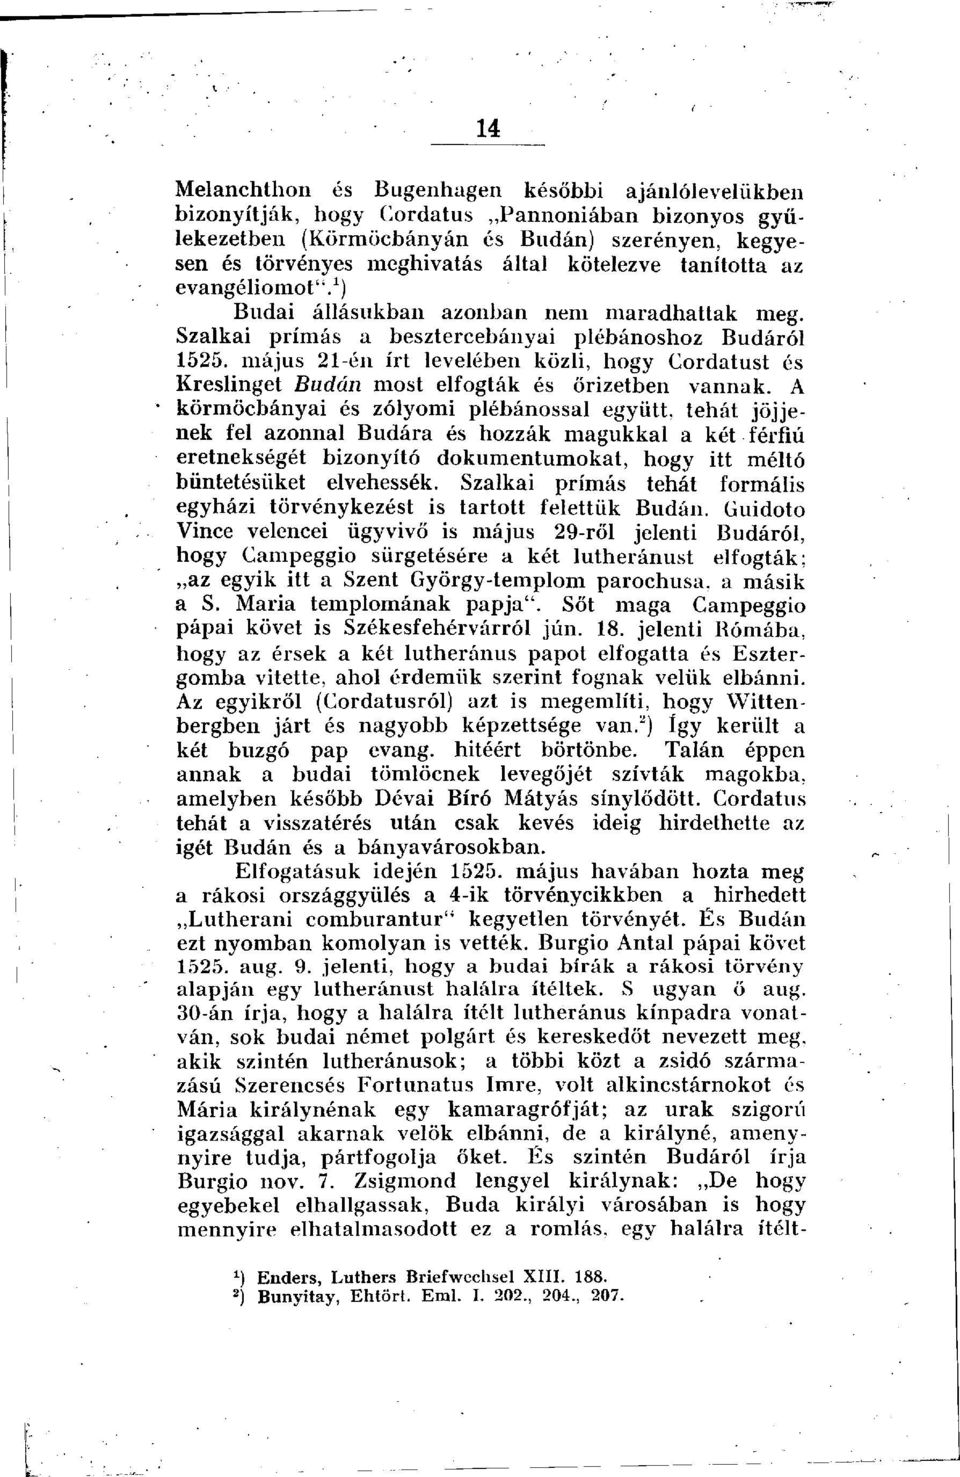 május 21-én írt levelében közli, hogy Cordatust és Kreslinget Budán most elfogták és őrizetben vannak.